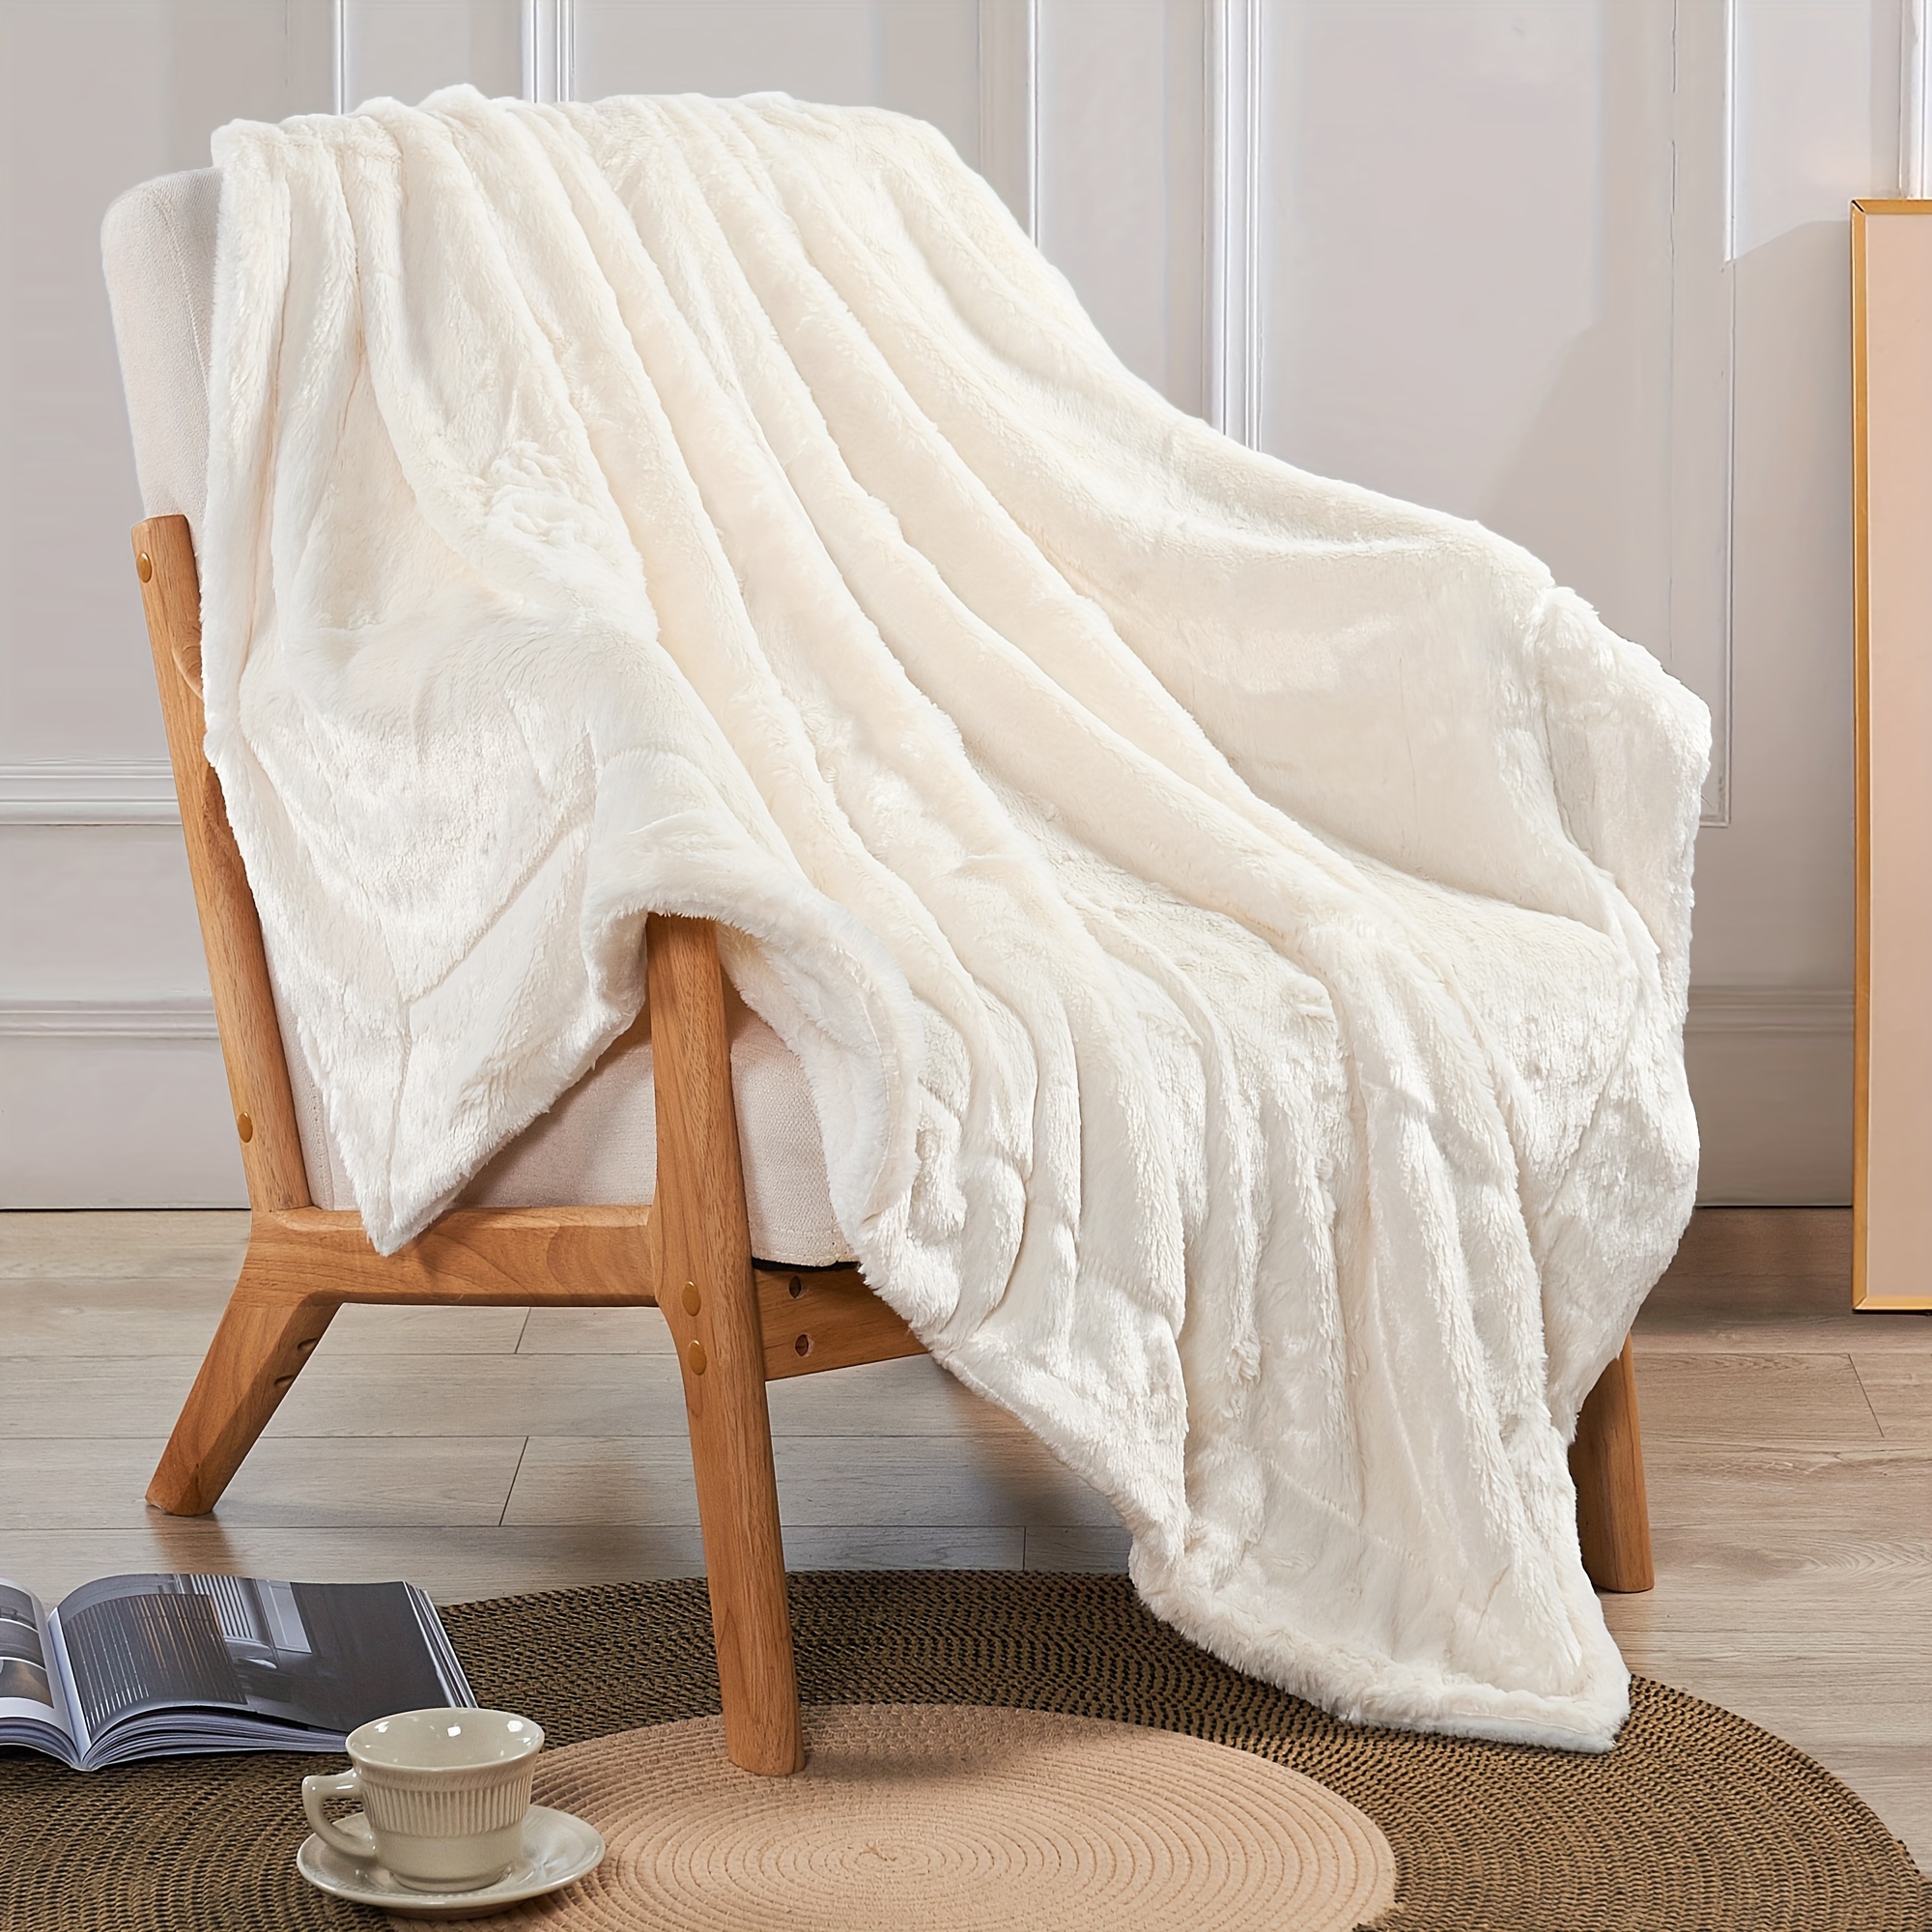 Coperta in pelliccia sintetica, coperta comoda e calda, leggera per divano